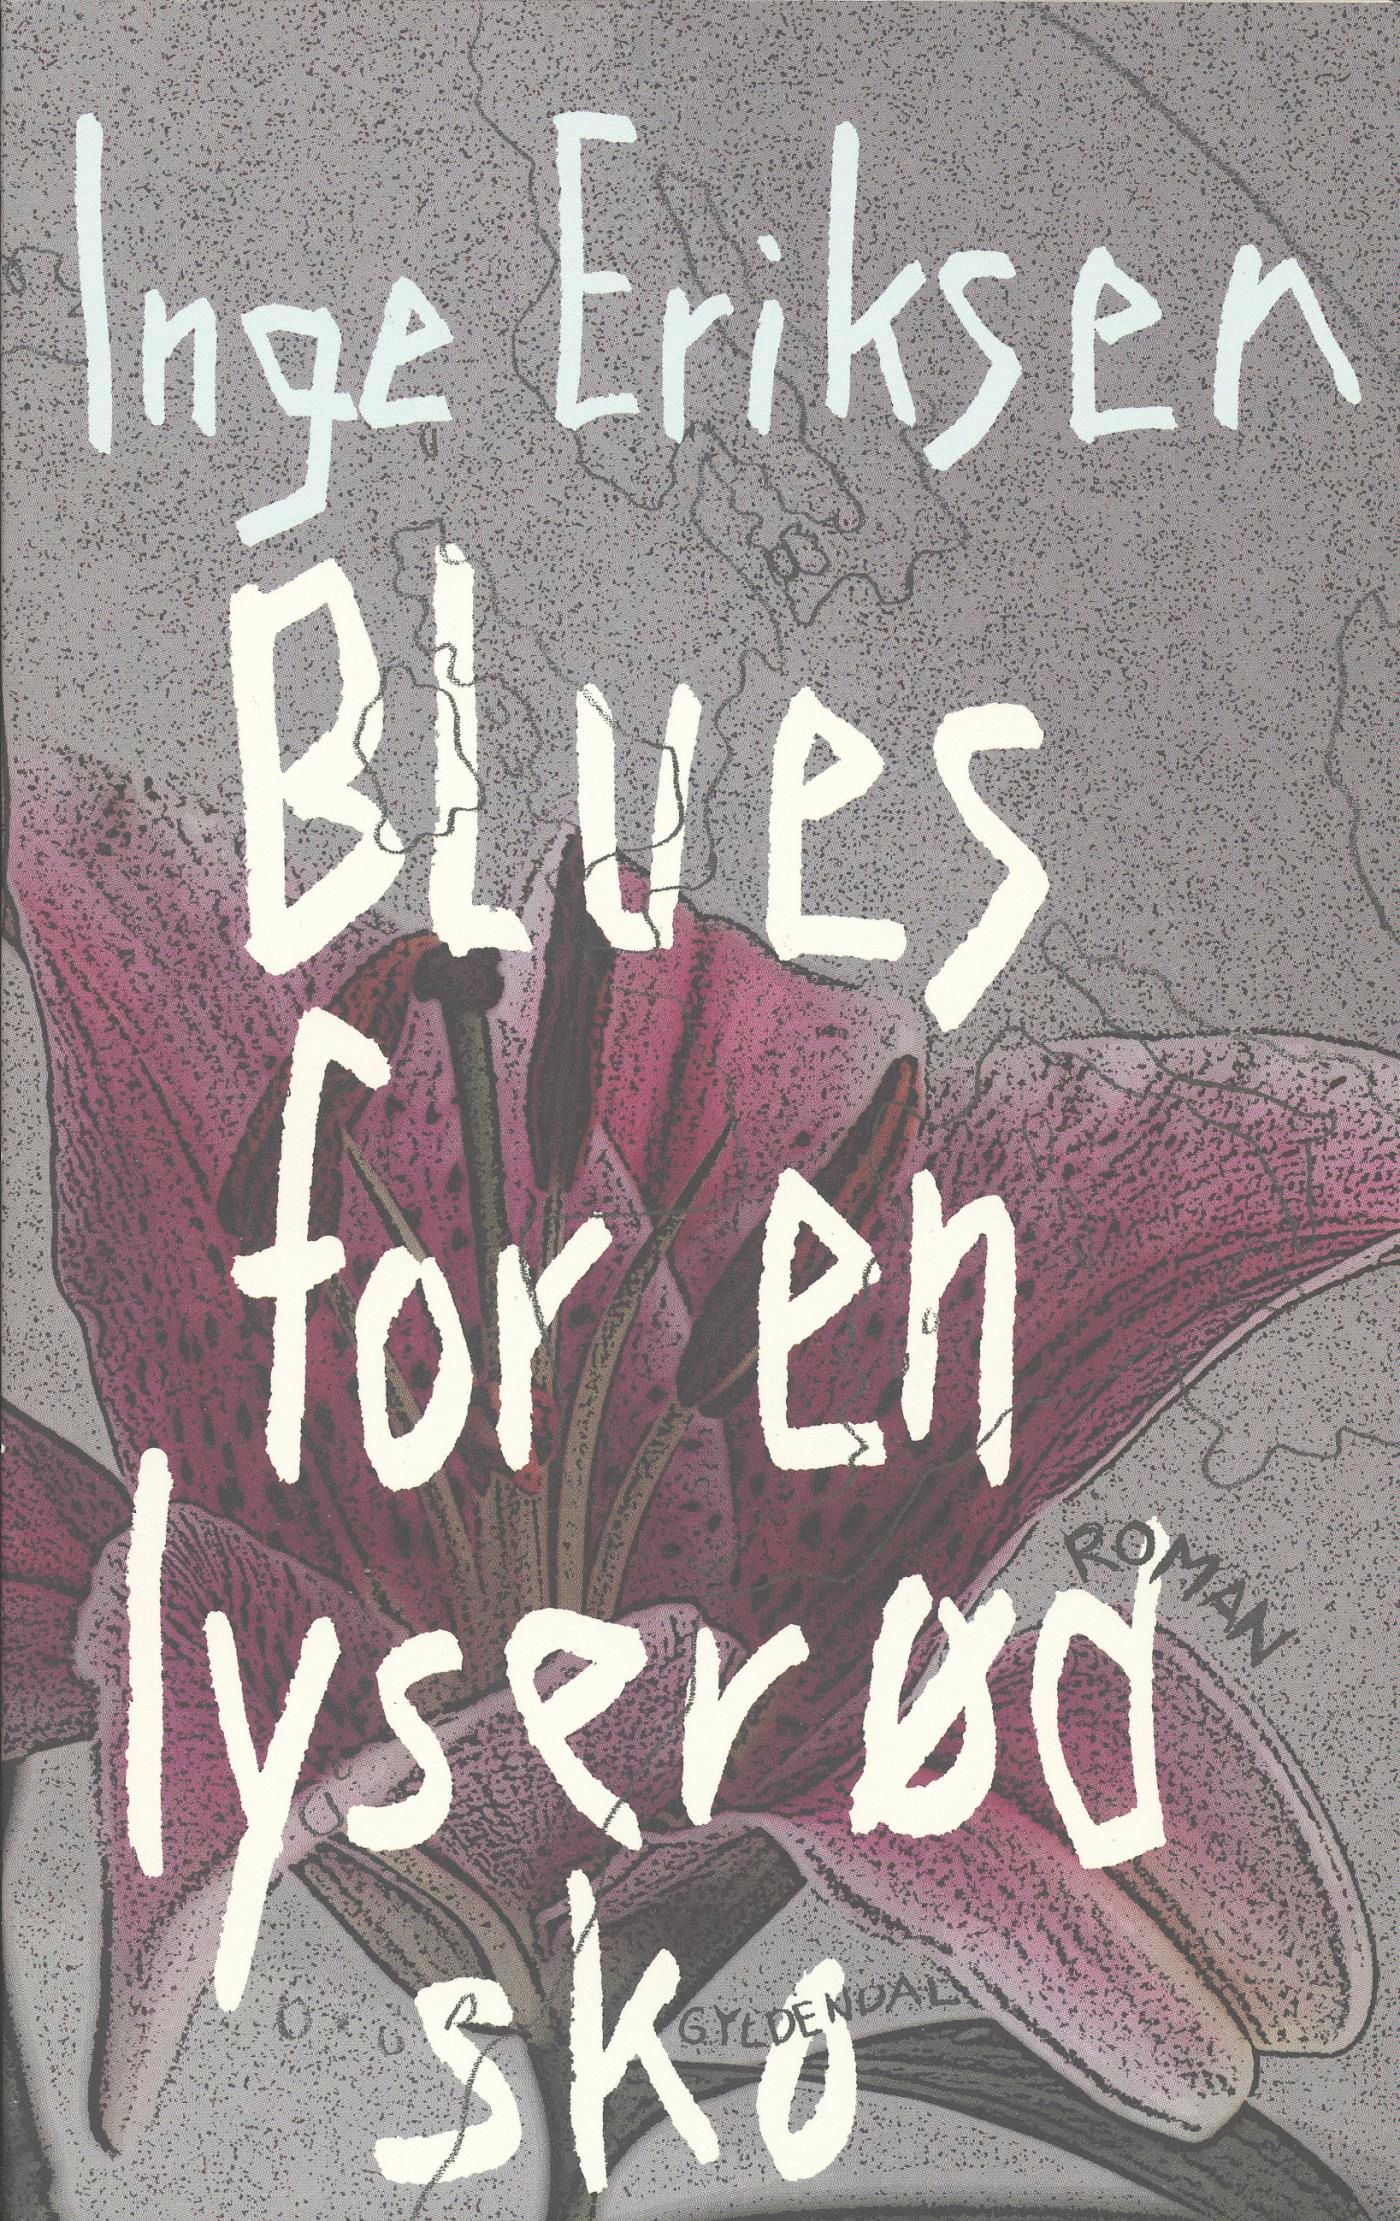 Blues for en lyserød sko, e-bog af Inge Eriksen